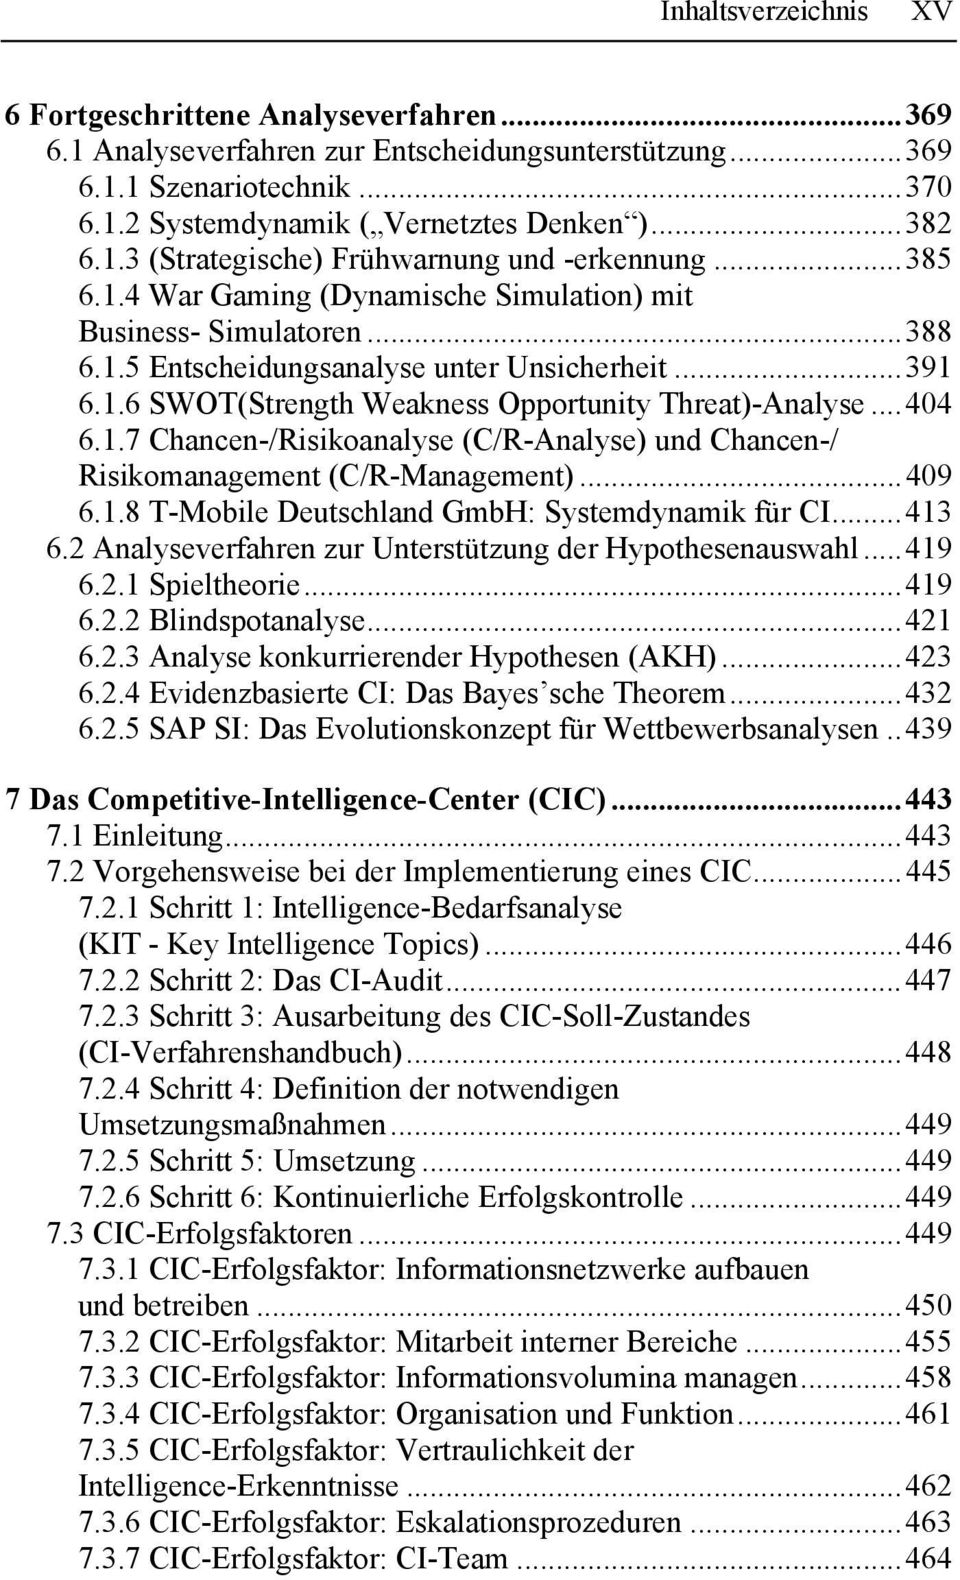 ..409 6.1.8 T-Mobile Deutschland GmbH: Systemdynamik für CI...413 6.2 Analyseverfahren zur Unterstützung der Hypothesenauswahl...419 6.2.1 Spieltheorie...419 6.2.2 Blindspotanalyse...421 6.2.3 Analyse konkurrierender Hypothesen (AKH).